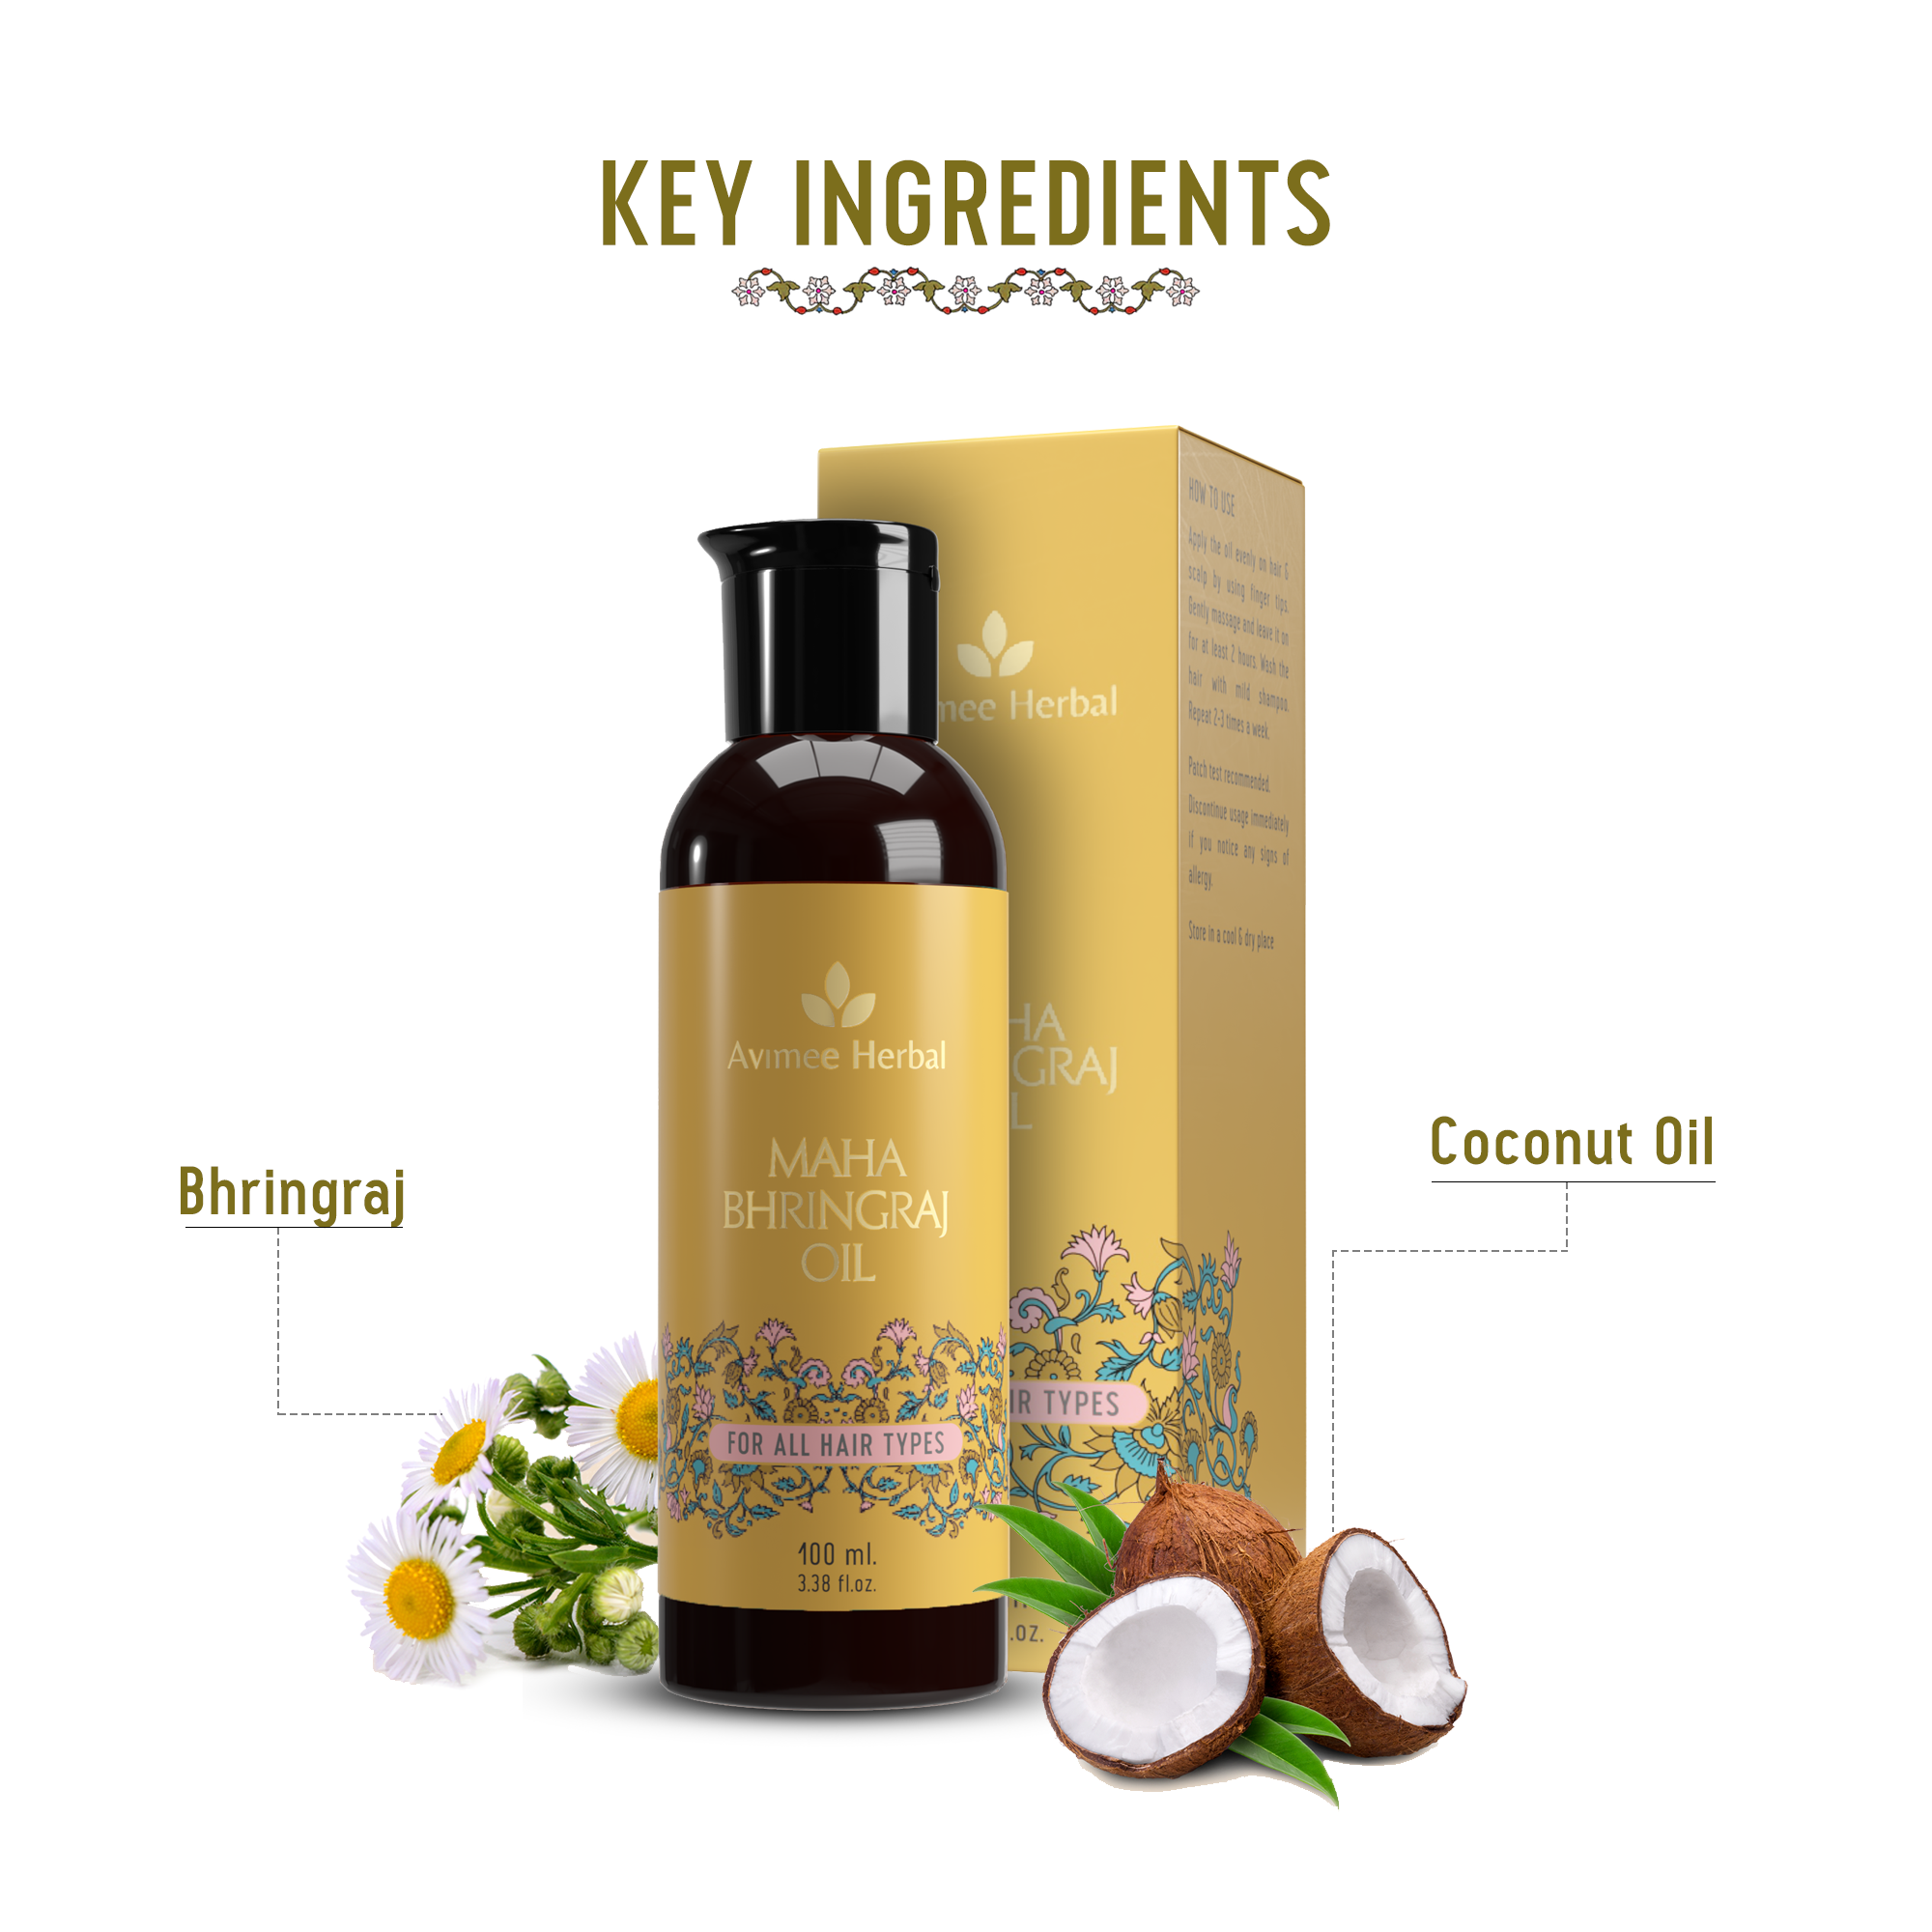 Ingredients : Maha Bhringraj Hair Oil